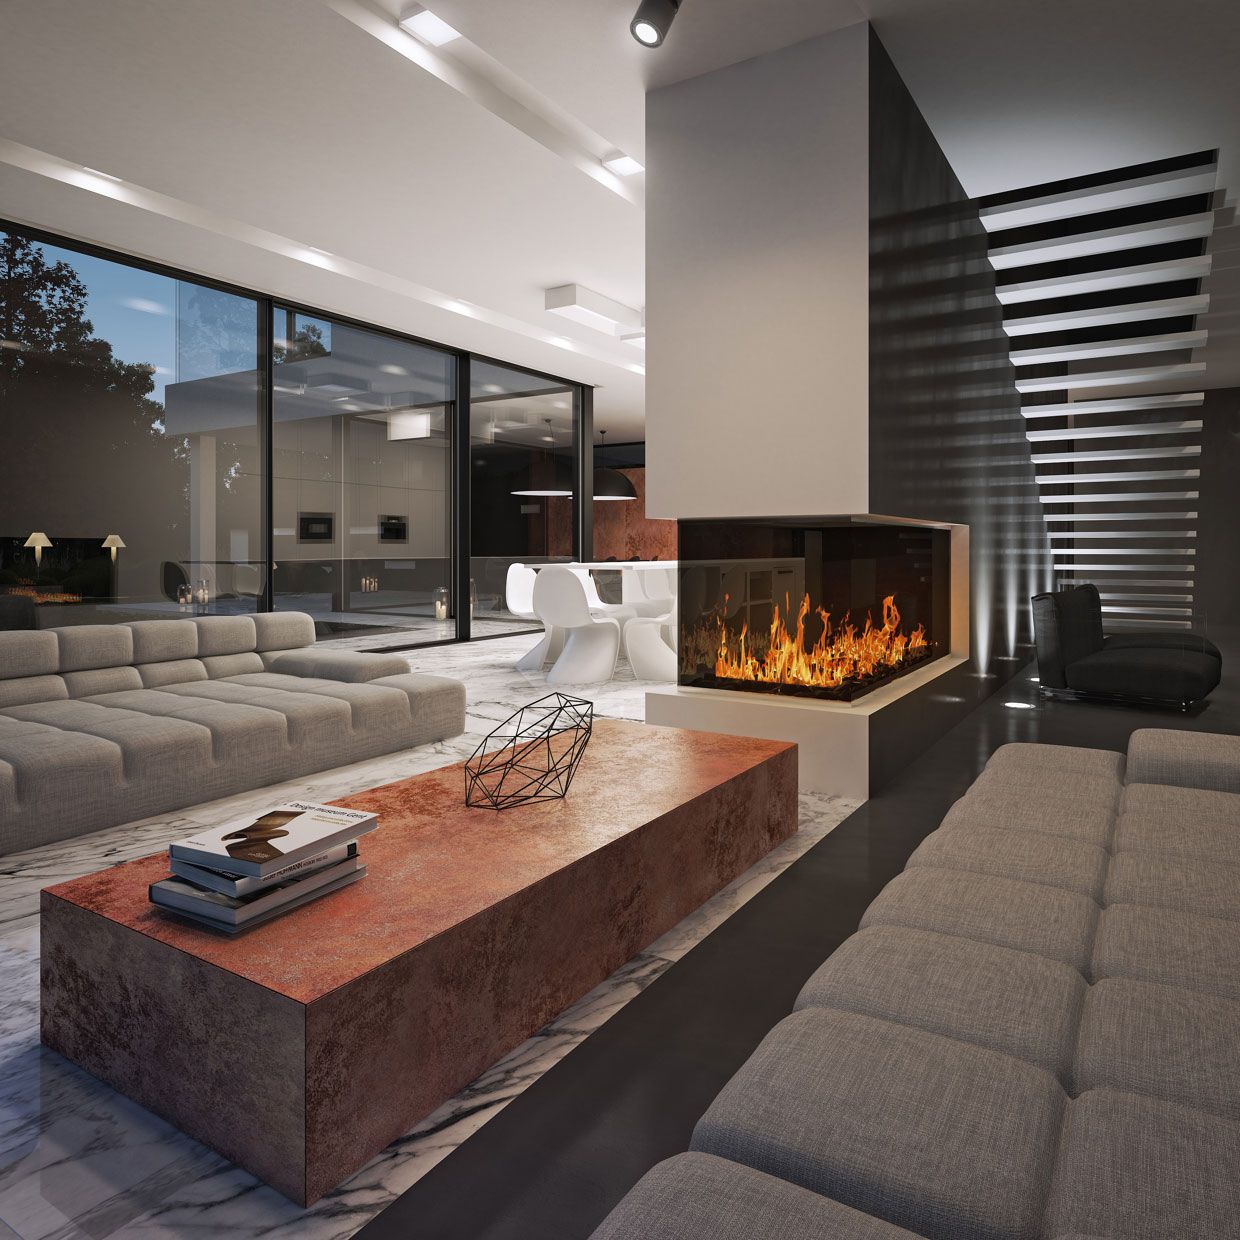 Modern Living Room Design Images - Modern Living Room Decor: Pick Any ...